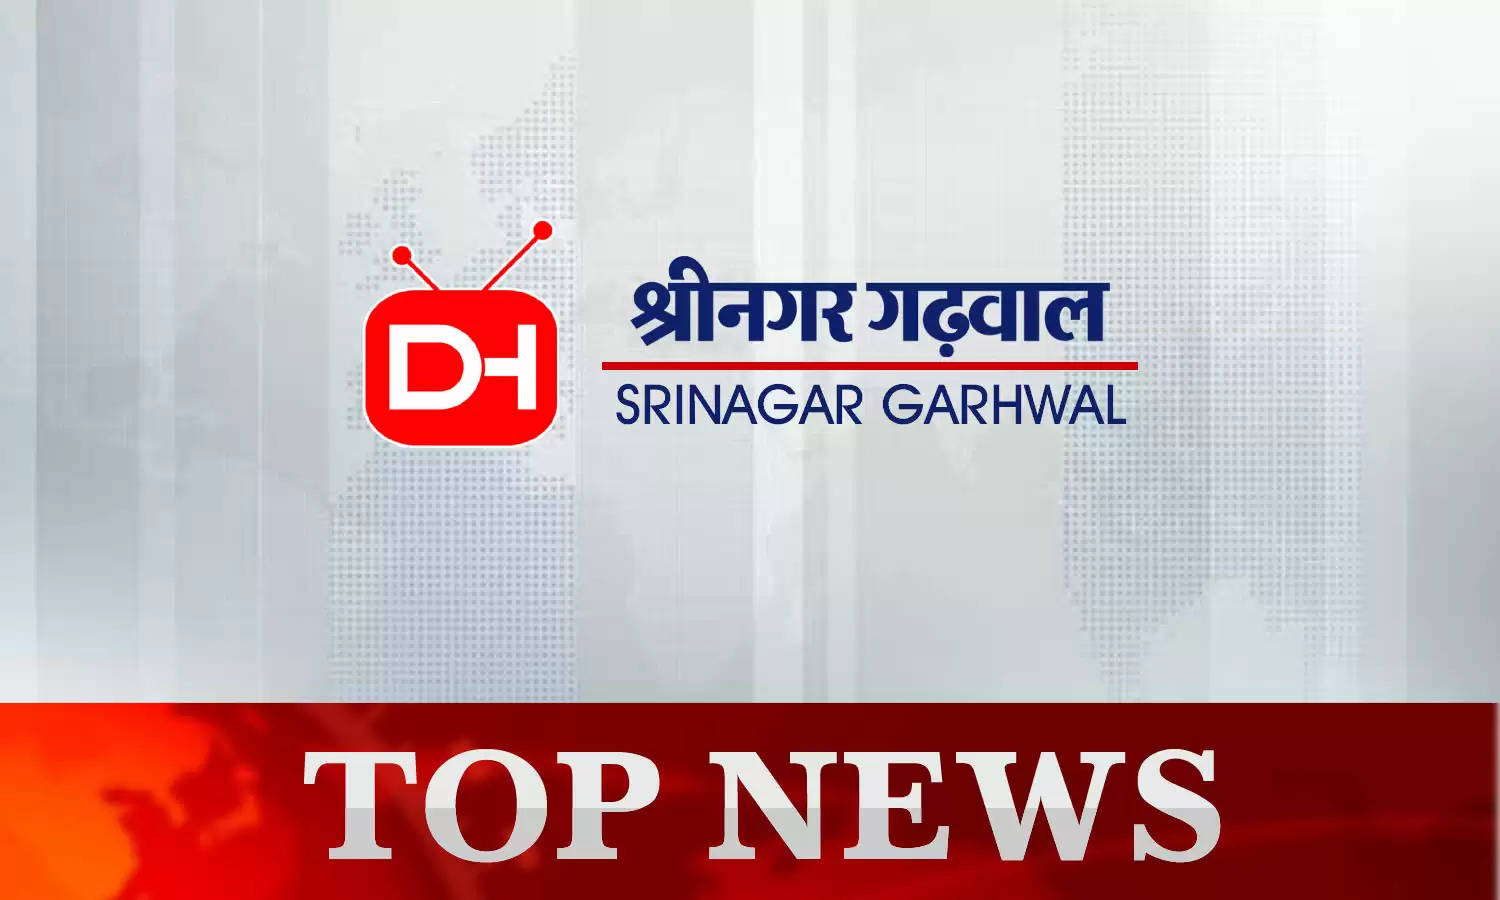 Srinagar Garhwal News Today 18th October 2022 : श्रीनगर गढ़वाल की दिनभर की छोटी-बड़ी खबरें